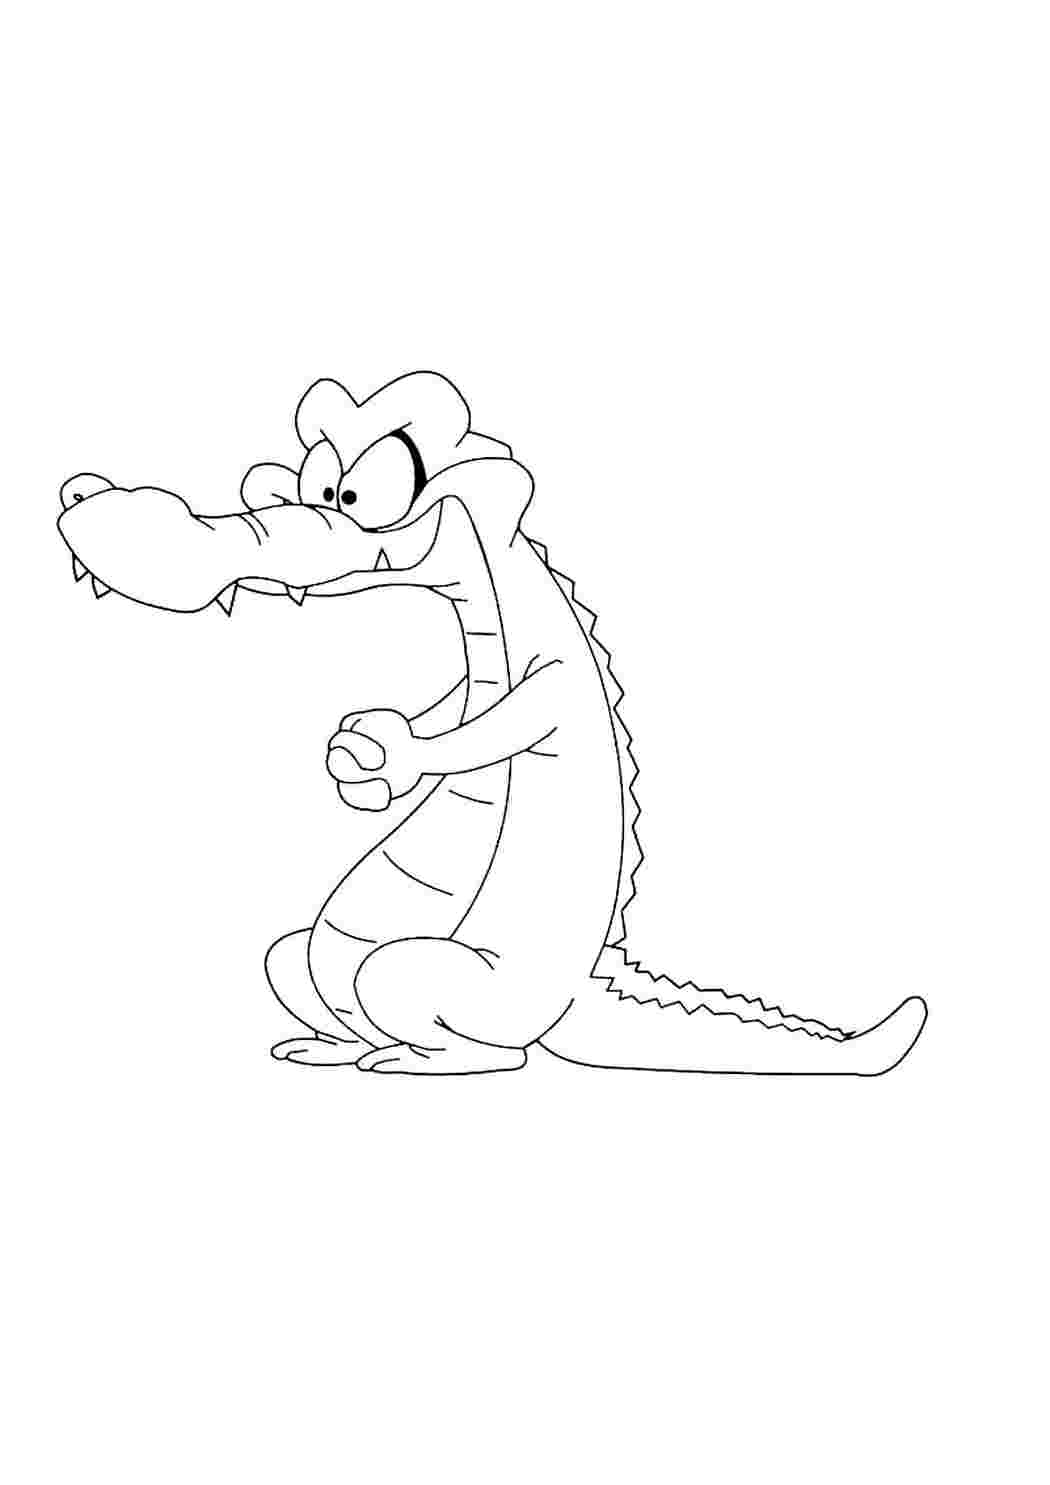 Крокодил раскраска для детей мультяшный